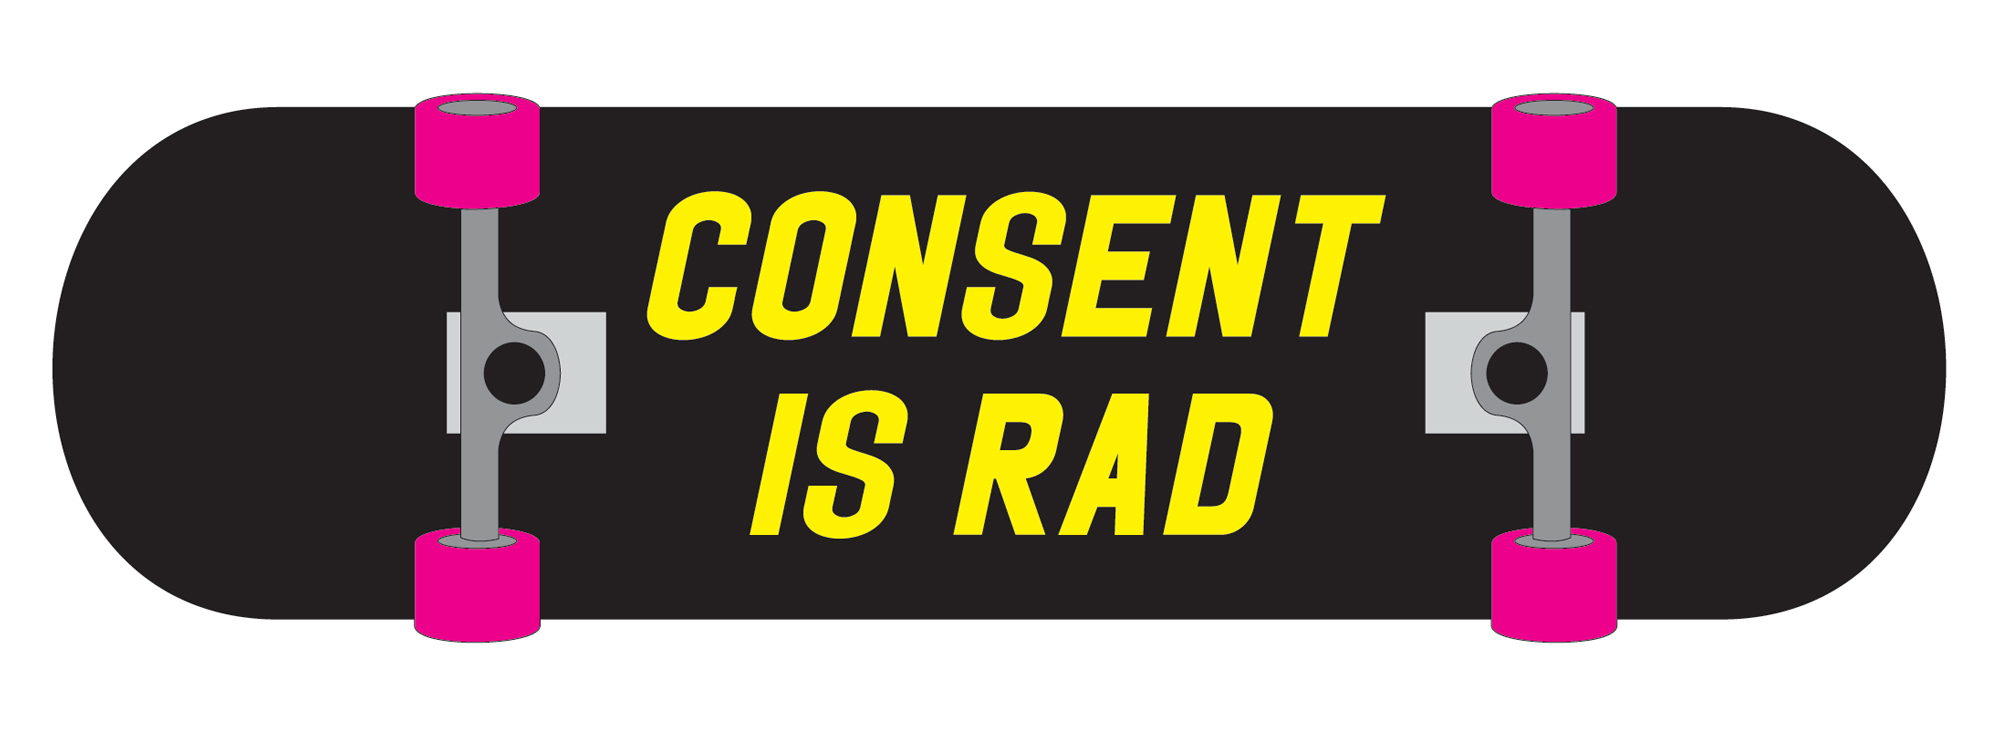 2000 consent is rad logo